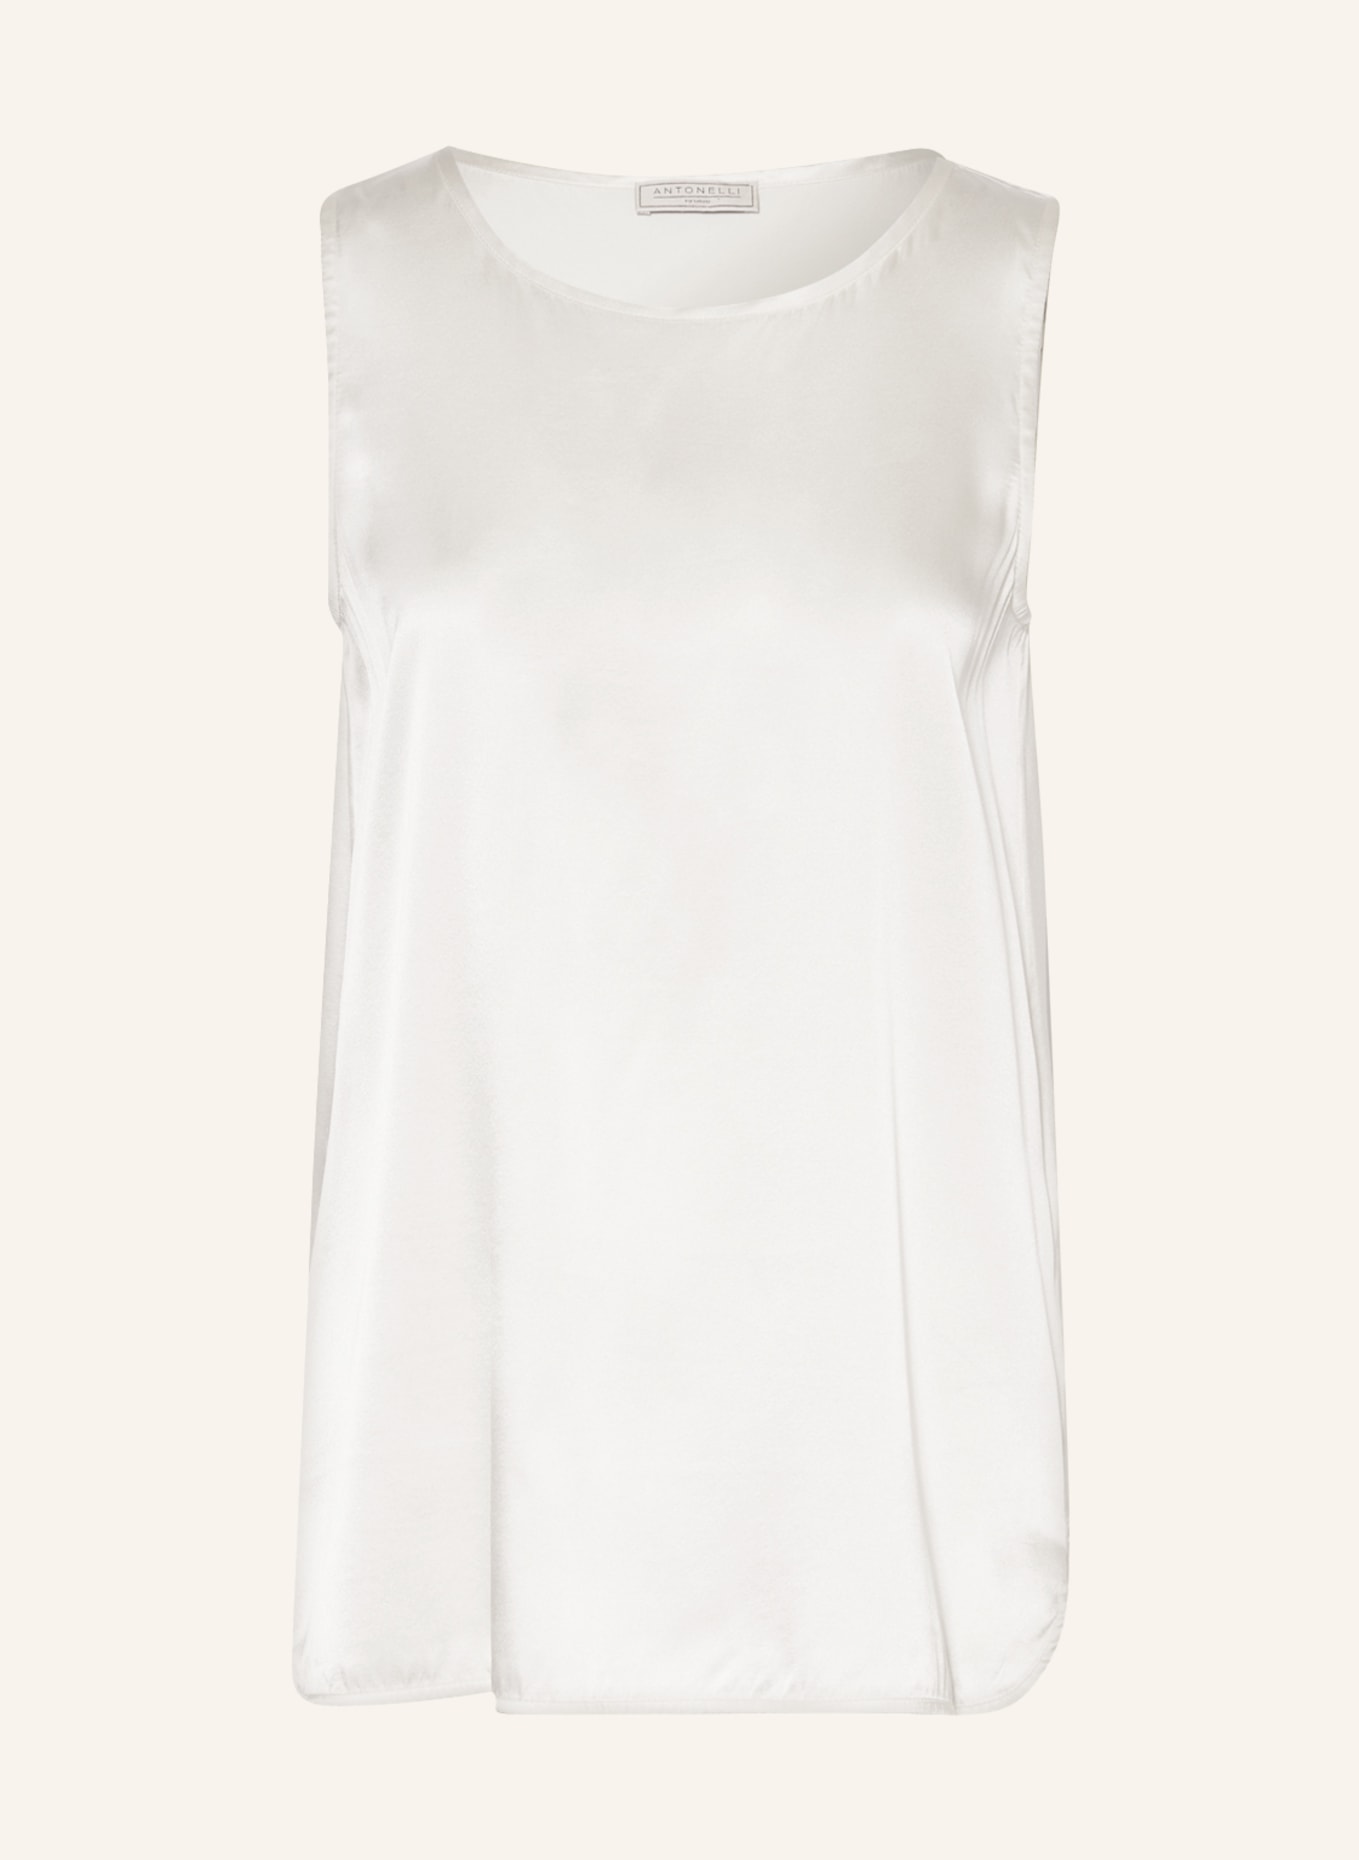 ANTONELLI firenze Silk top, Color: WHITE (Image 1)